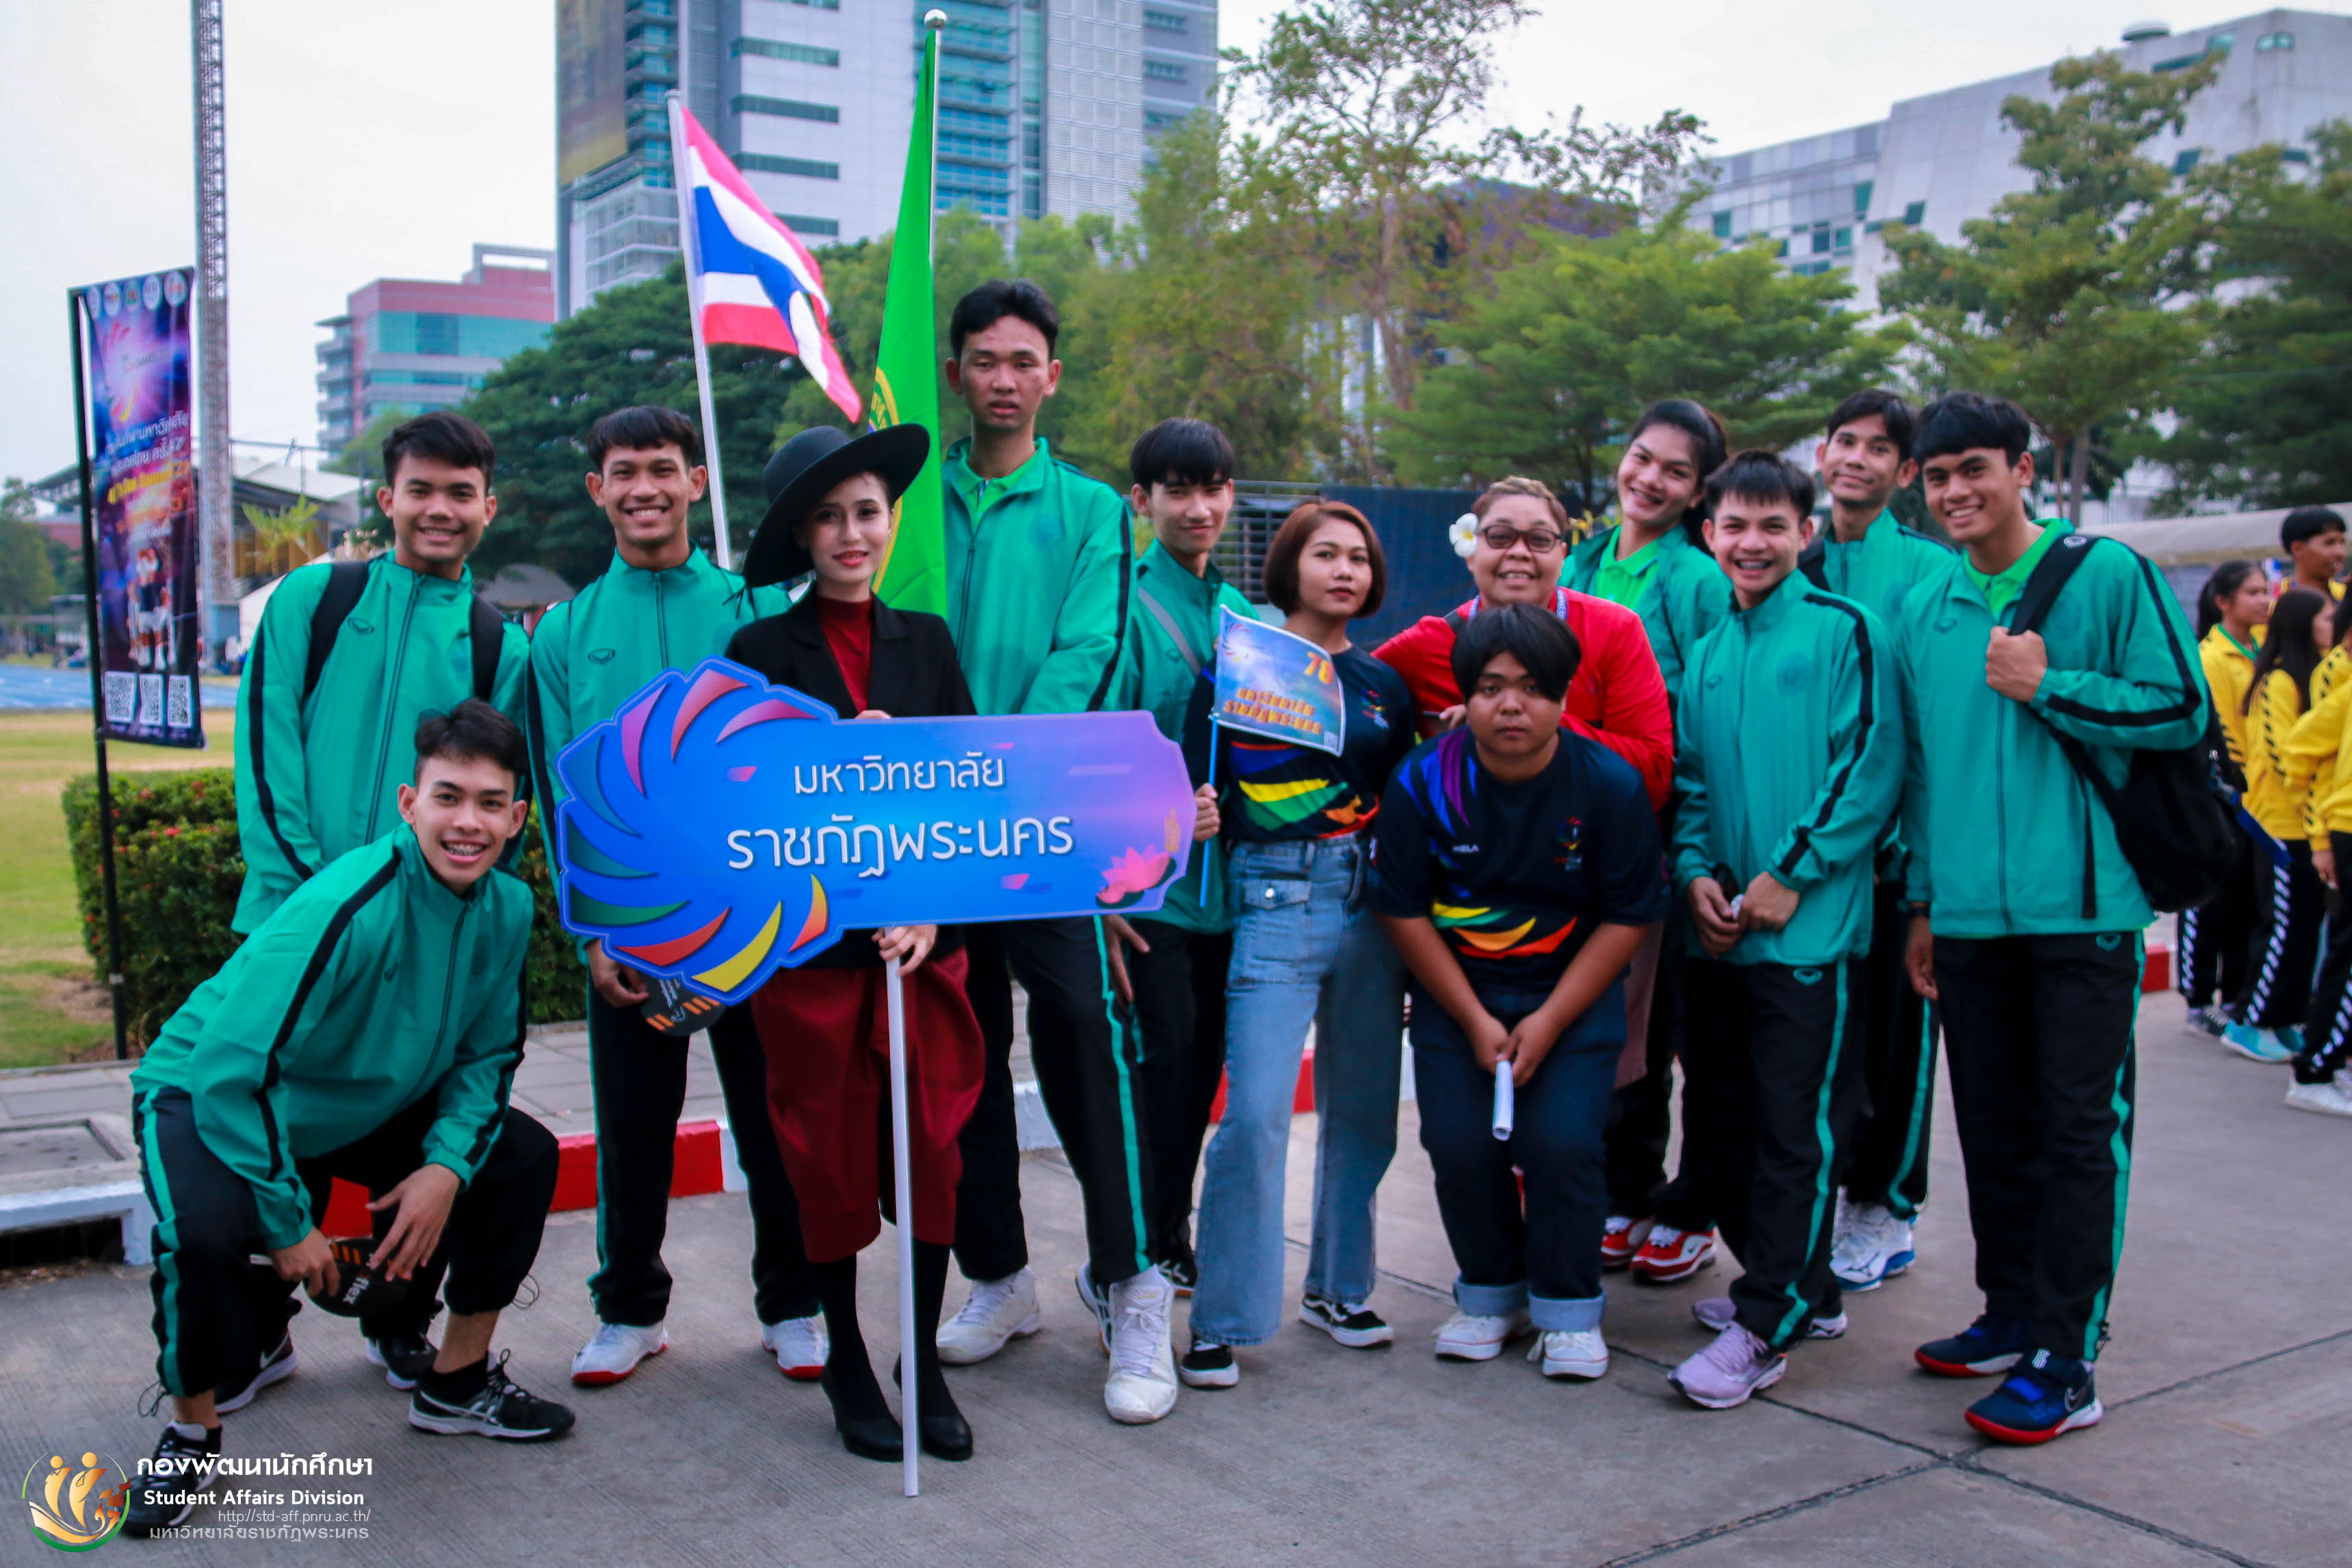 11 มกราคม 2563 การแข่งขันกีฬามหาวิทยาลัยแห่งประเทศไทย ครั้งที่ 47 "The Sun Games 2020" ระหว่างวันที่ 10 - 19 มกราคม 2563 ณ มหาวิทยาลัยรังสิต